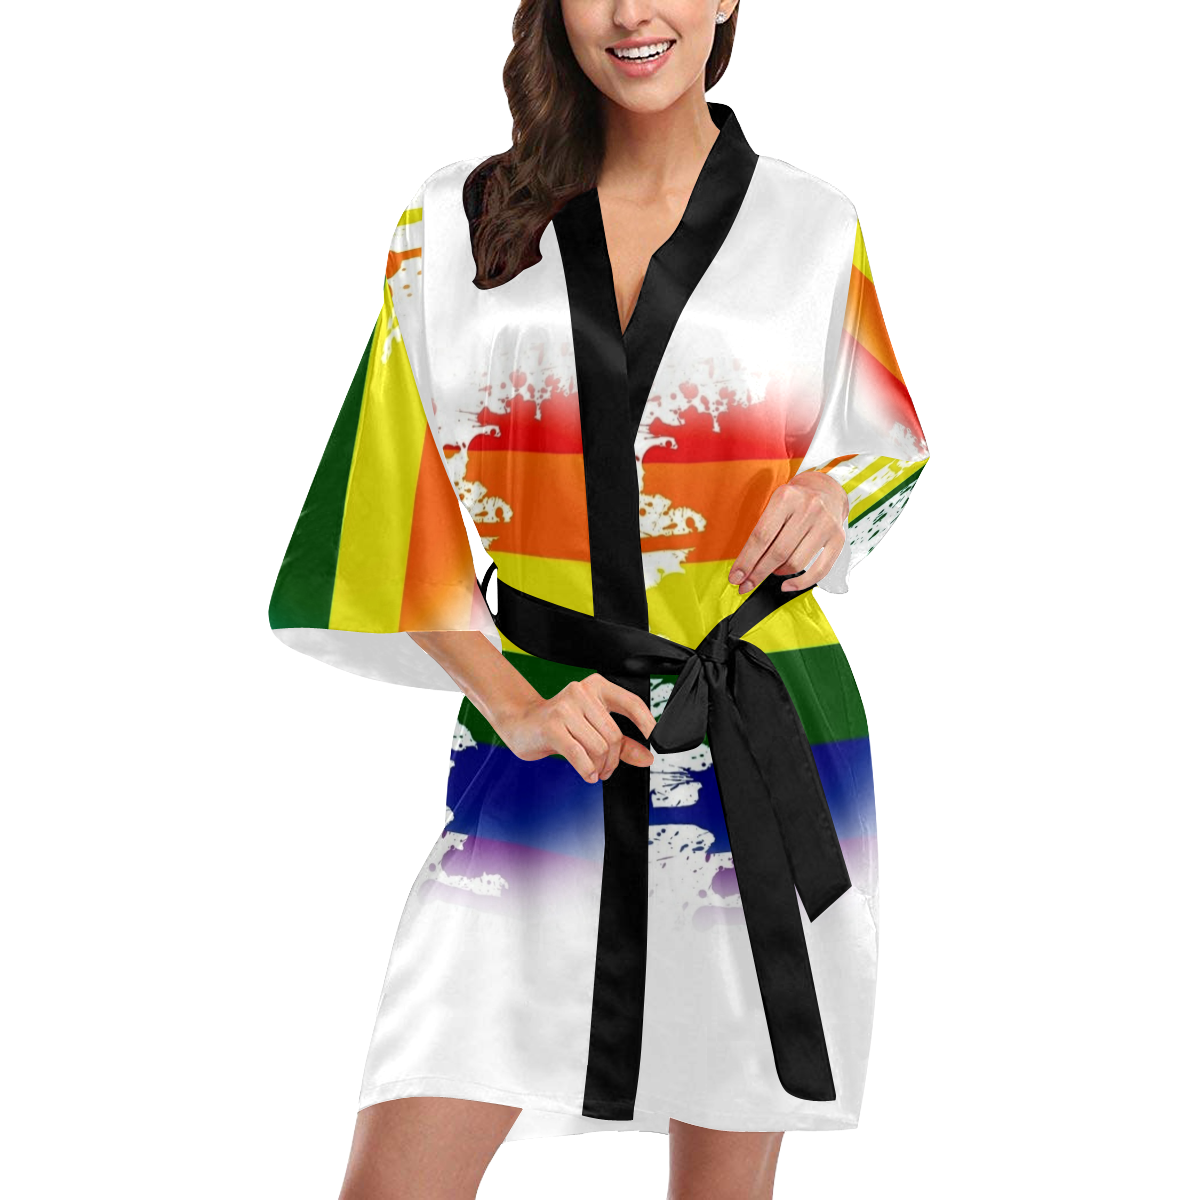 Love Pride by Artdream Kimono Robe